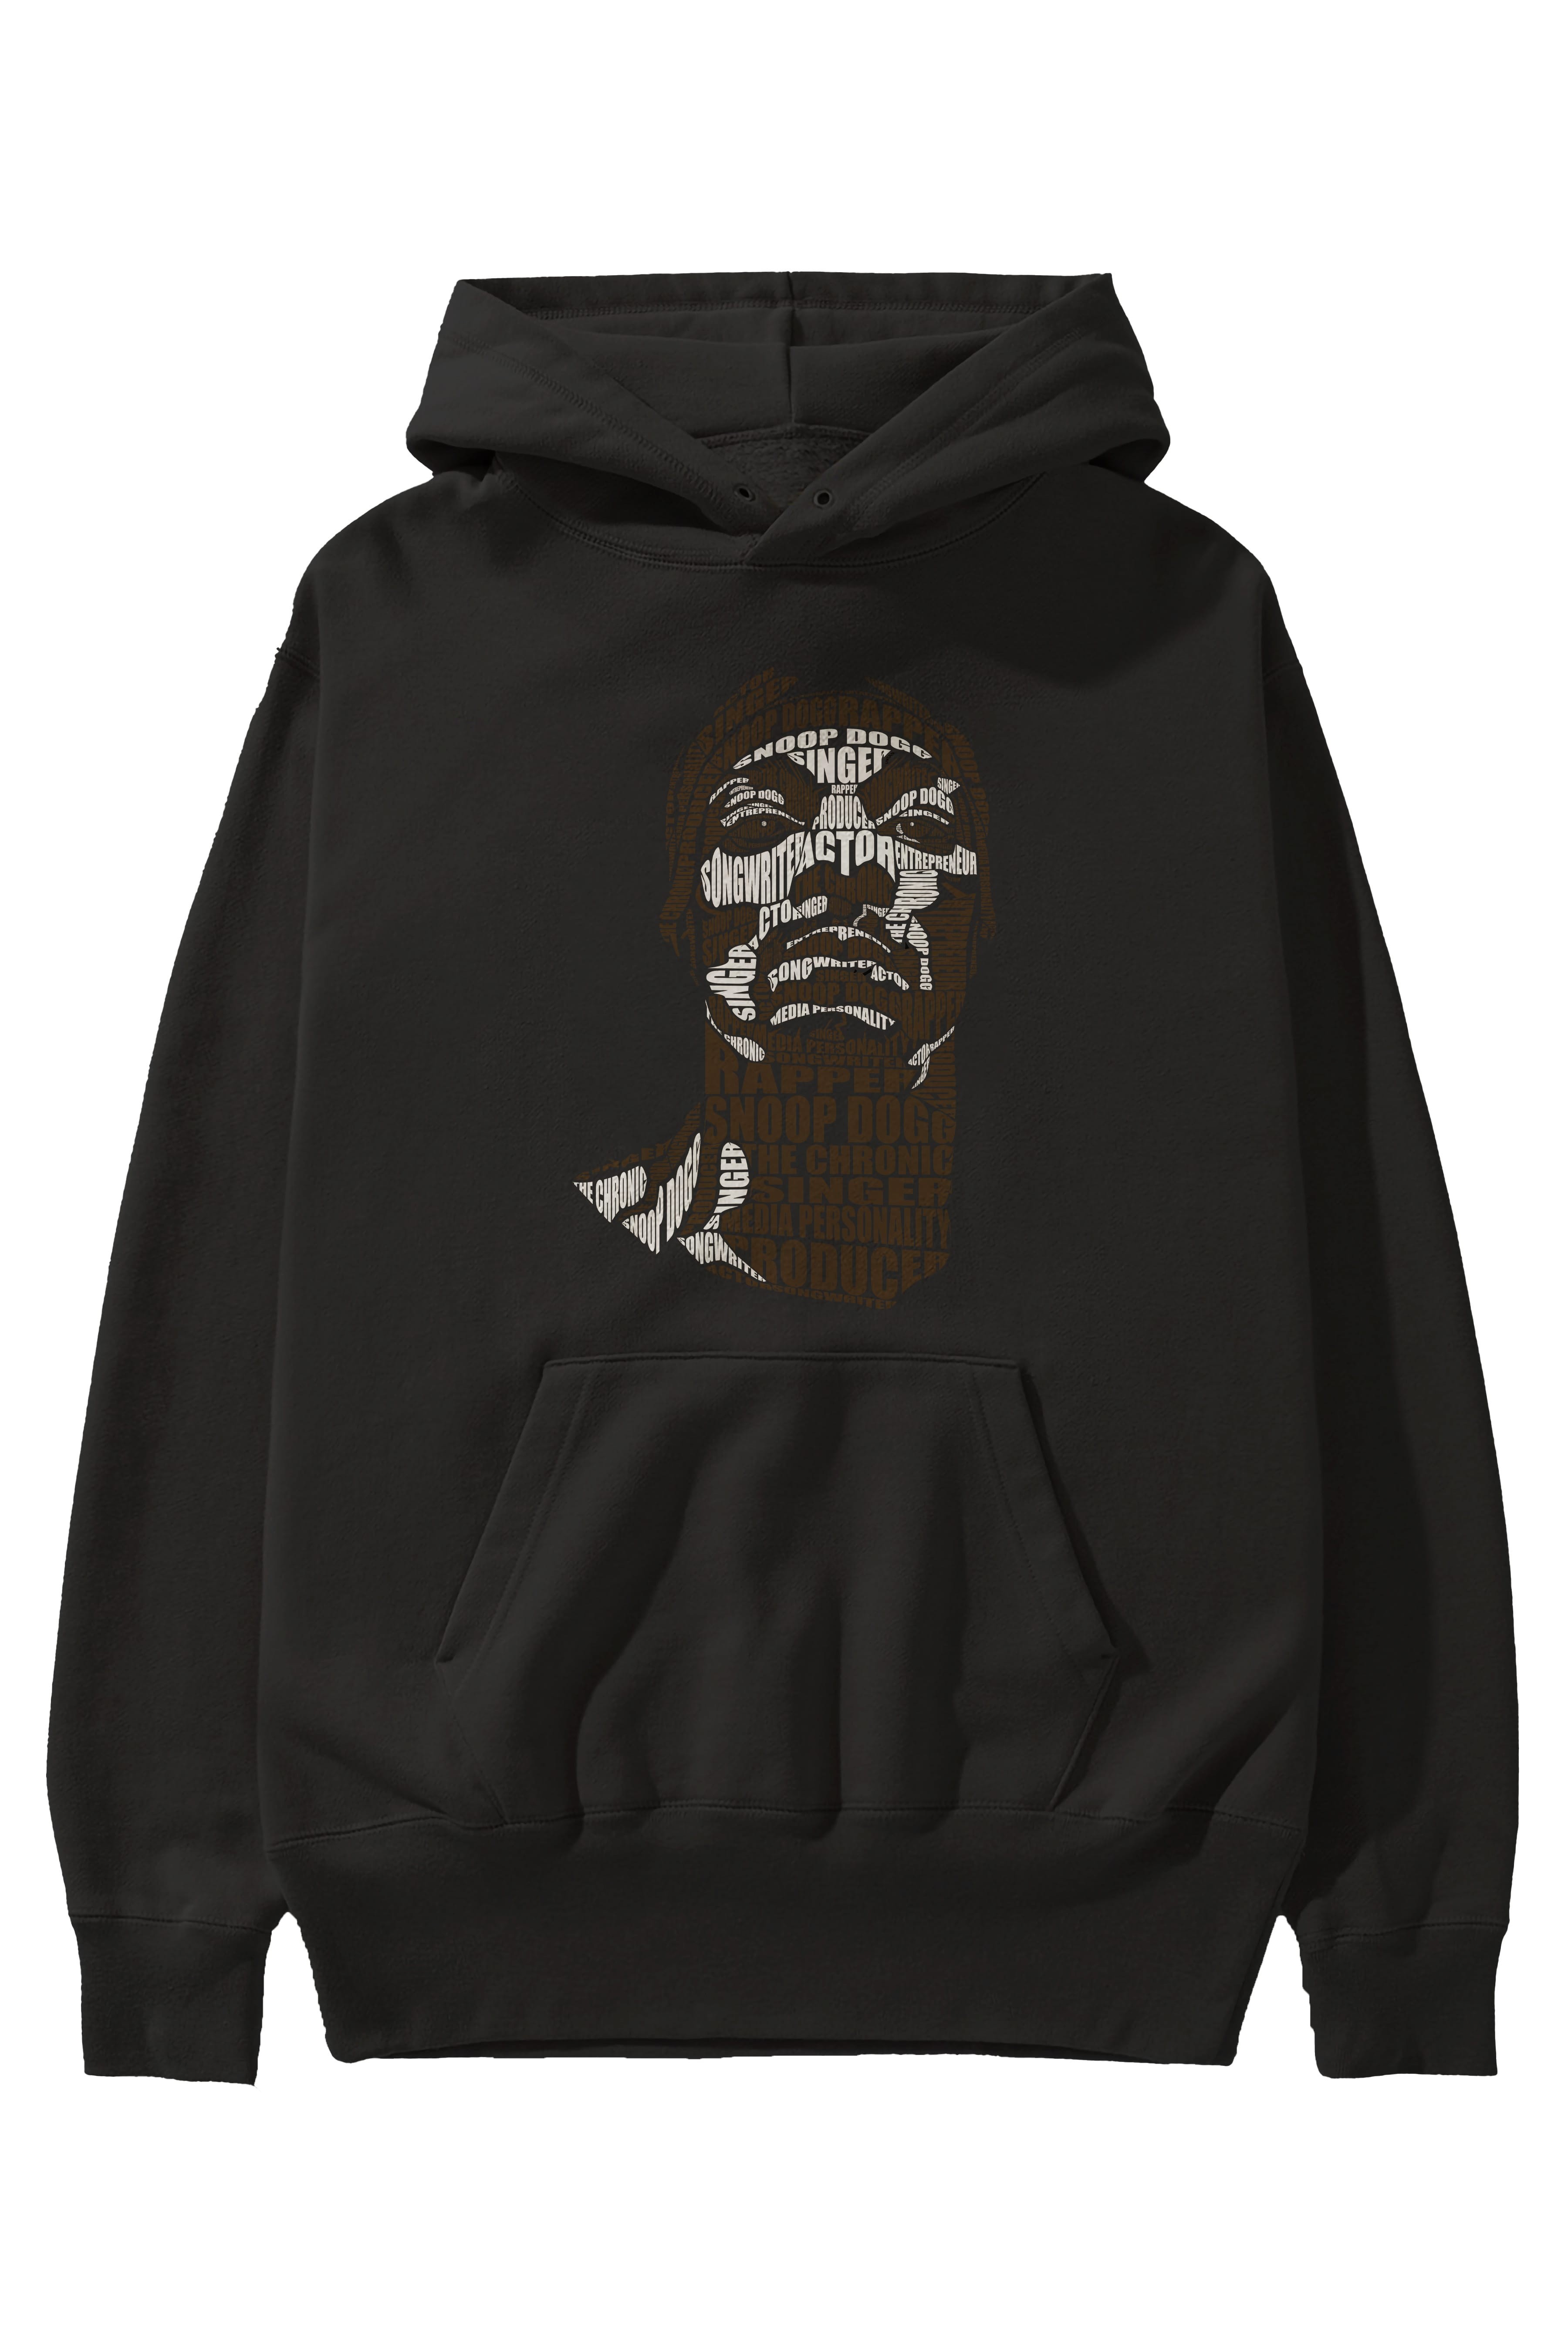 Snoop Dogg Calligram Ön Baskılı Hoodie Oversize Kapüşonlu Sweatshirt Erkek Kadın Unisex